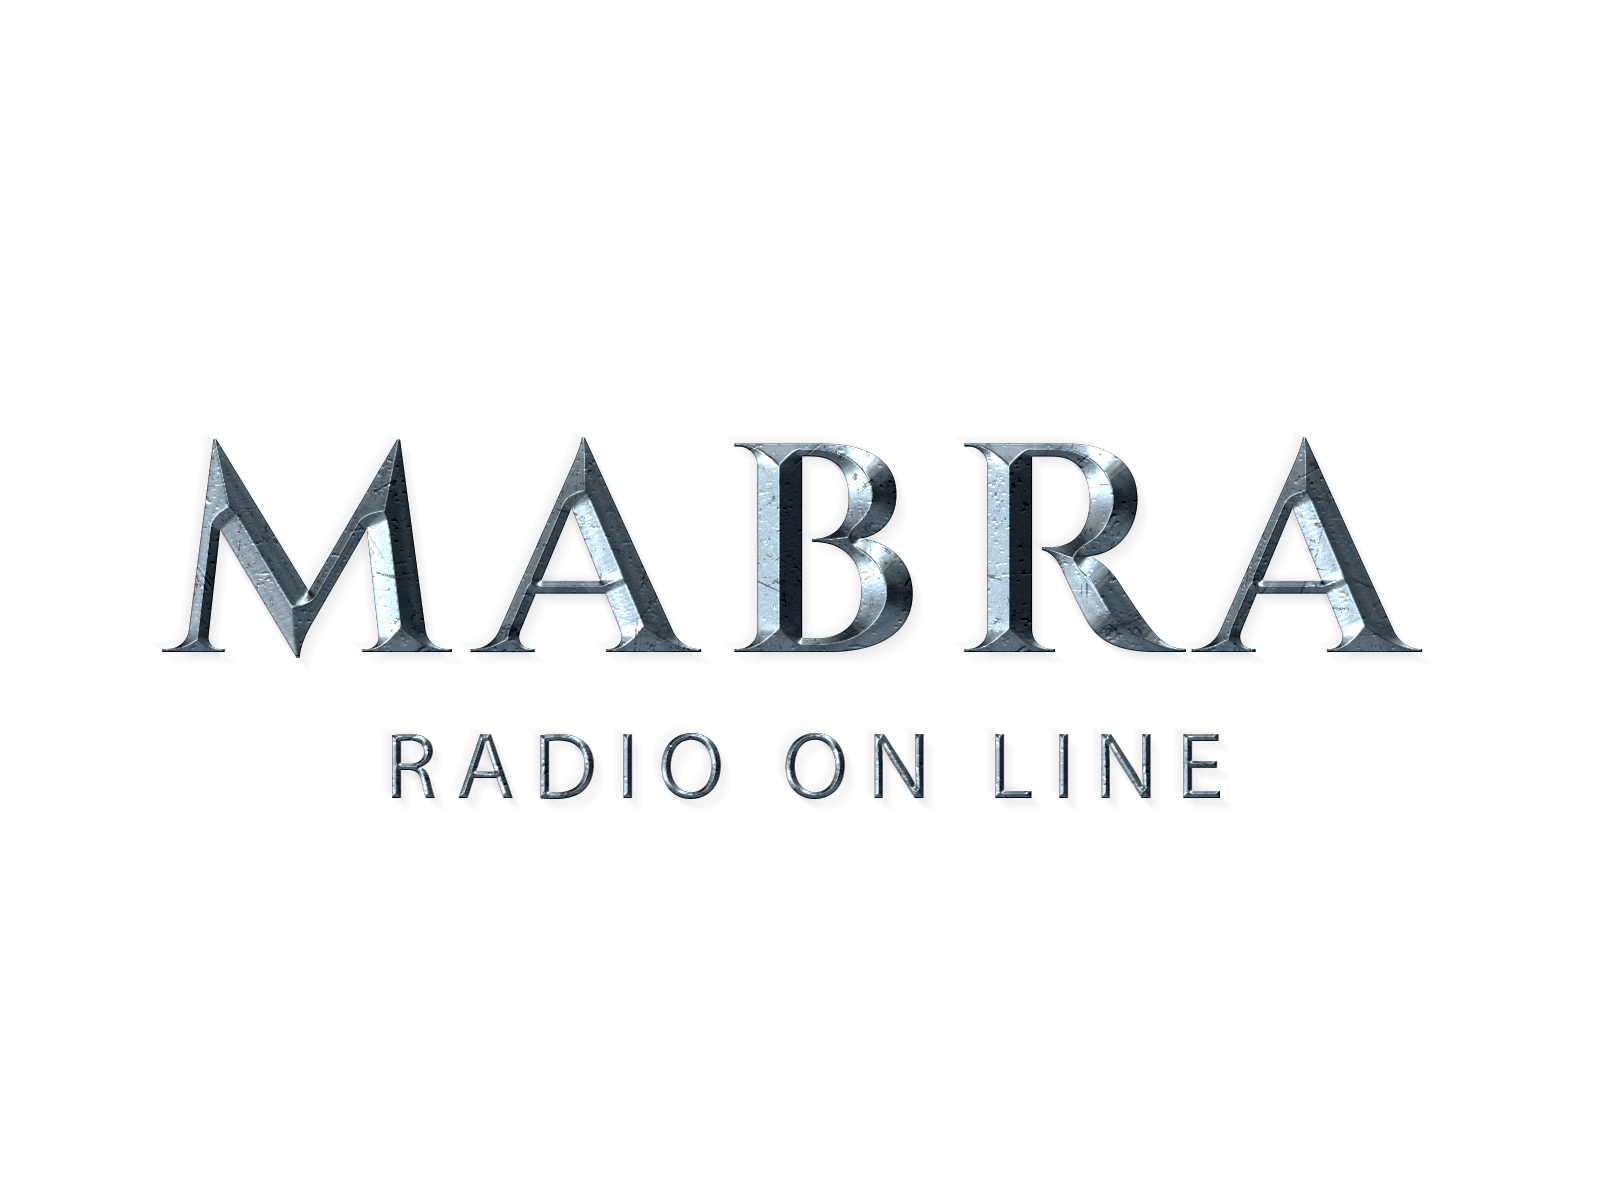 Mabra Radio